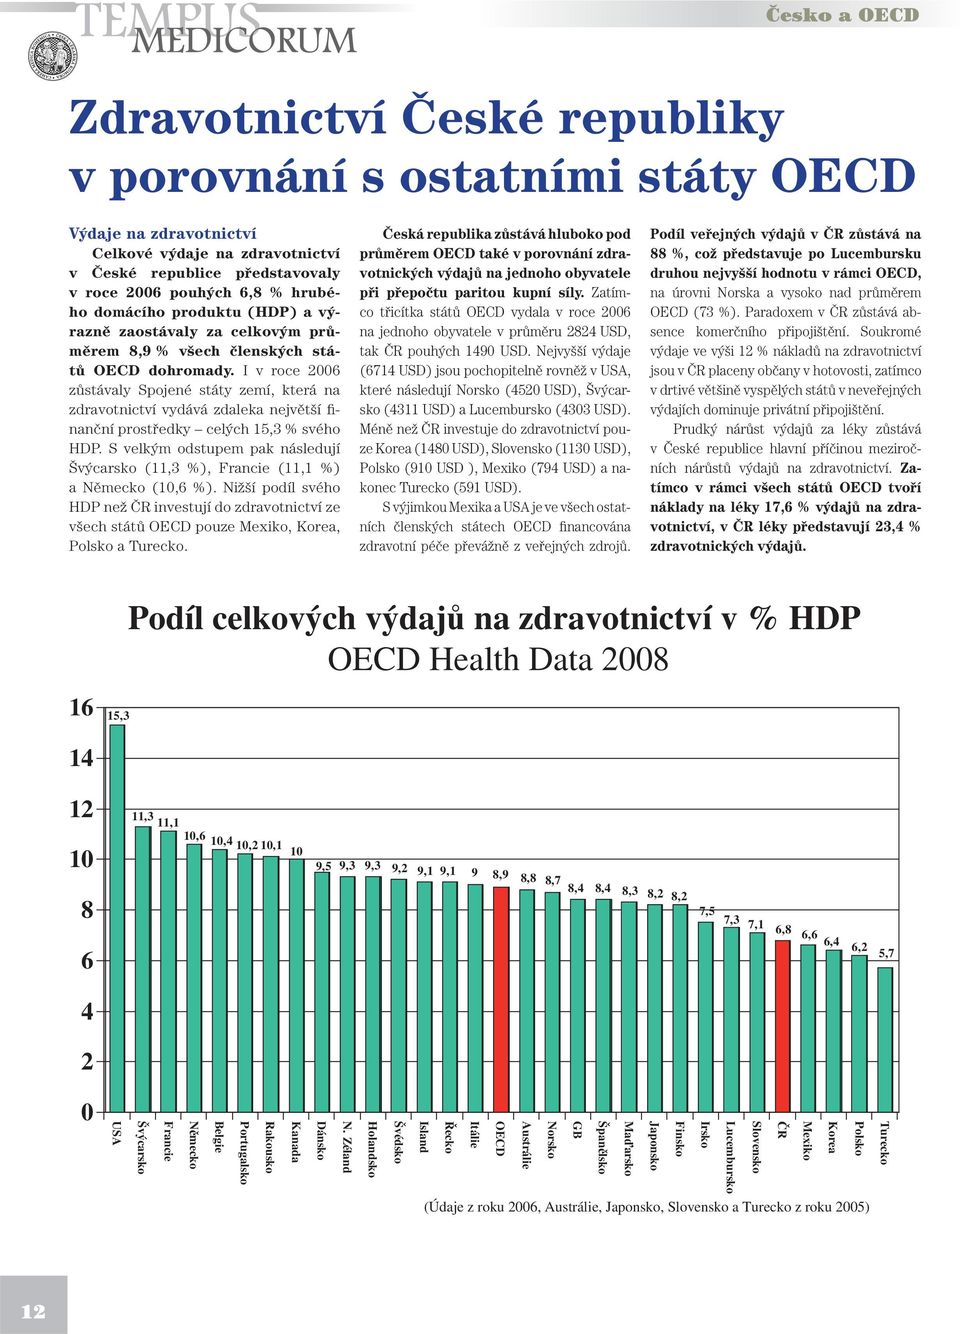 I v roce 2006 zůstávaly Spojené státy zemí, která na zdravotnictví vydává zdaleka největší finanční prostředky celých 15,3 % svého HDP.